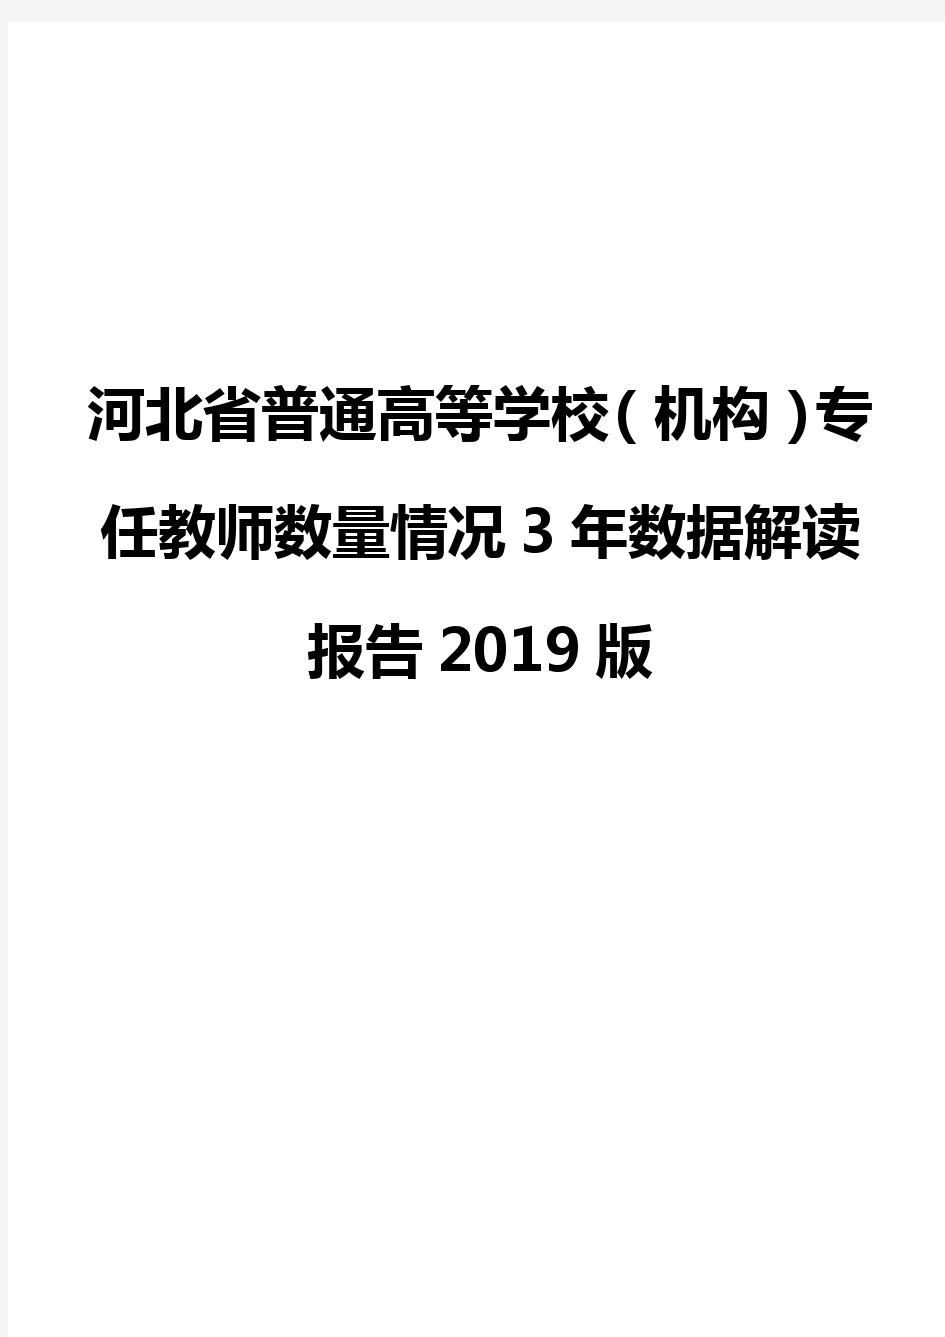 河北省普通高等学校(机构)专任教师数量情况3年数据解读报告2019版